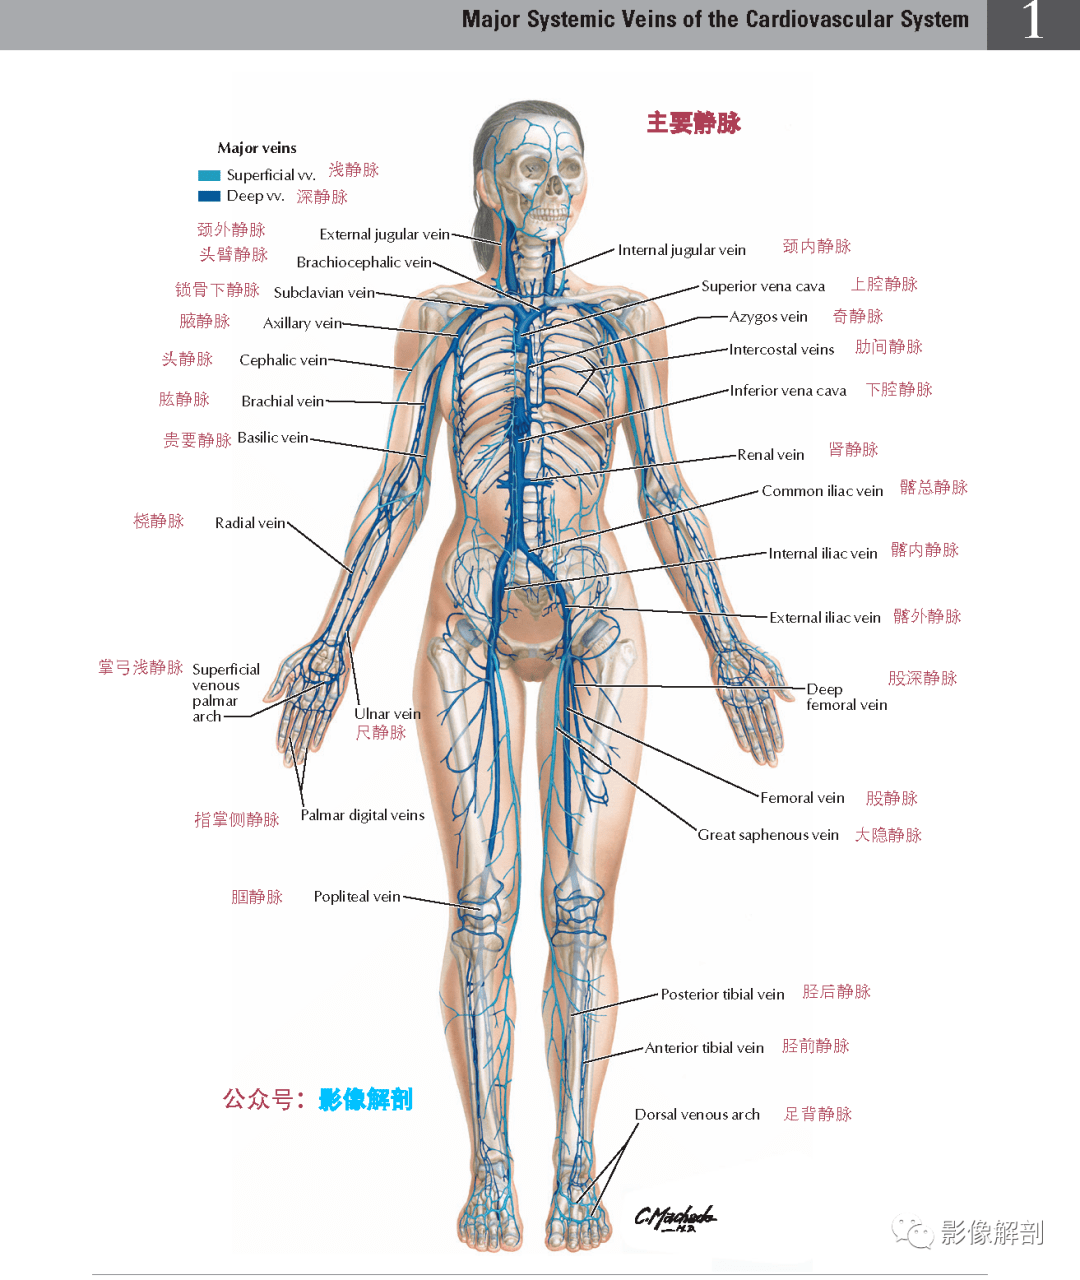 今日推荐 全身主要动脉,静脉,神经及淋巴系统概述  1,主要动脉及搏动